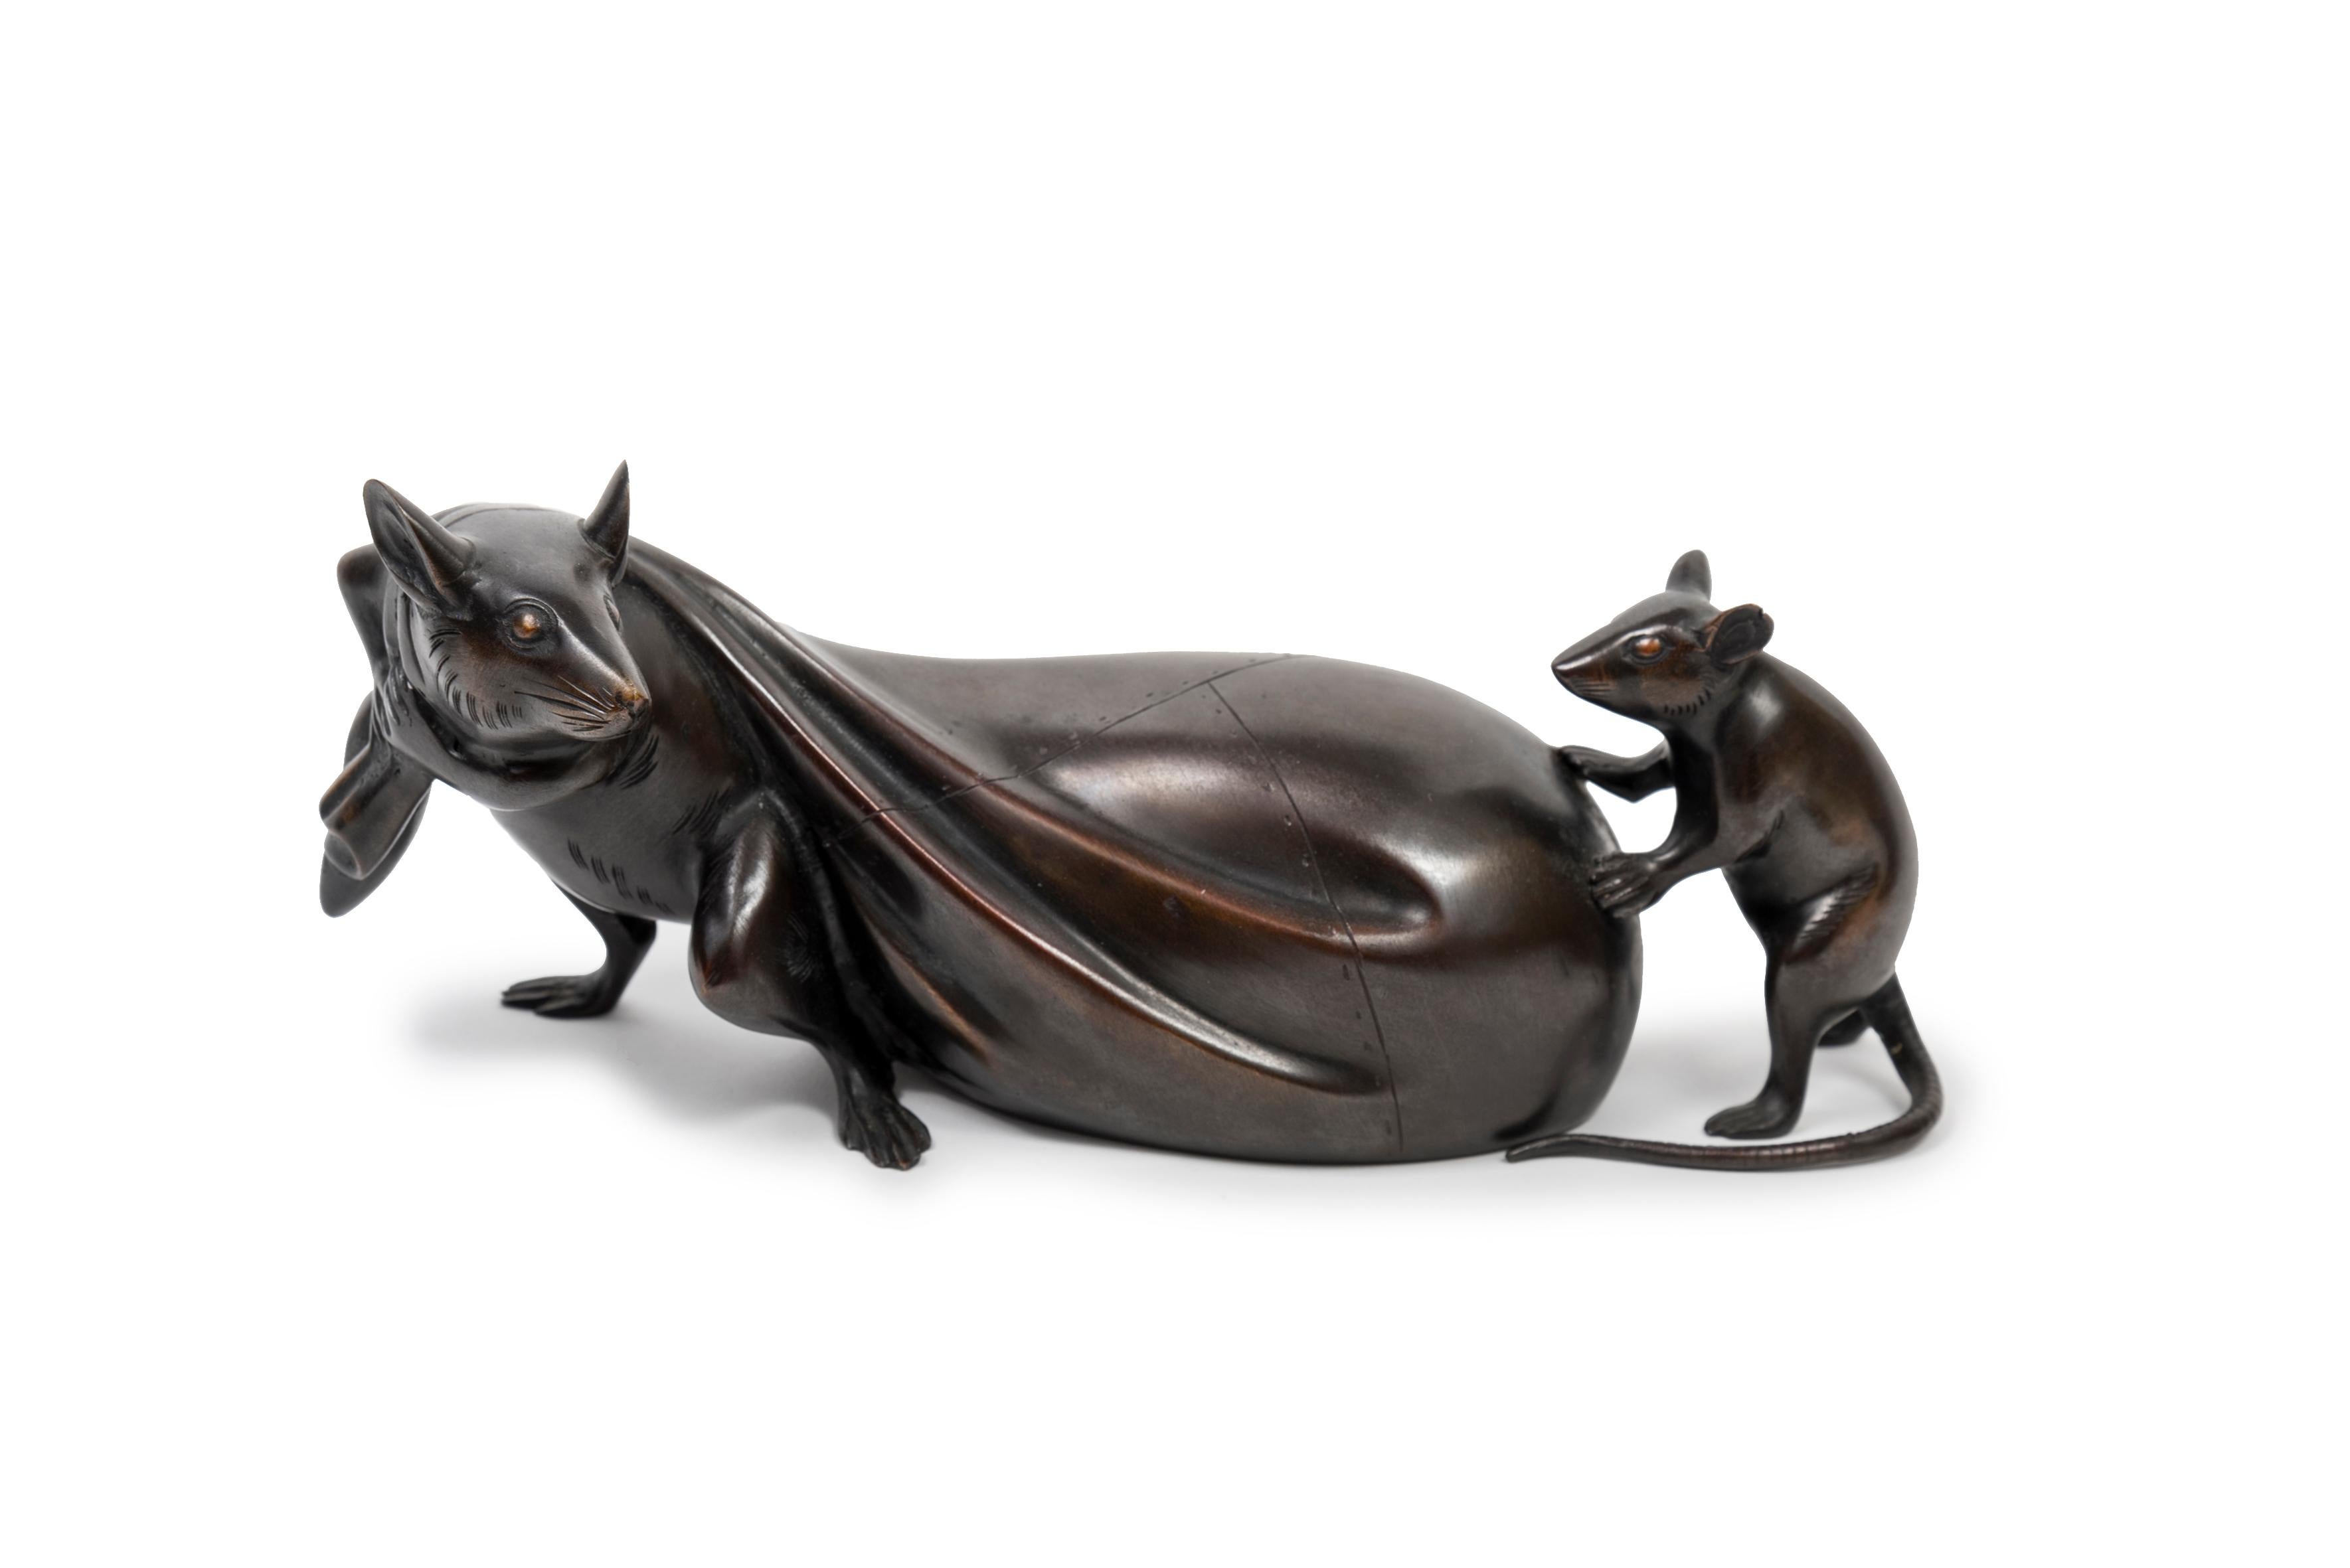 Japanische Bronze, die zwei Mäuse darstellt, von denen die eine einen Schatzbeutel zieht. 

Die Maus oder die Ratte (beide auf Japanisch nezumi genannt), eines der Tierkreiszeichen, ist ein Glückssymbol. Dieser Beutel kann mit dem Schatzbeutel von